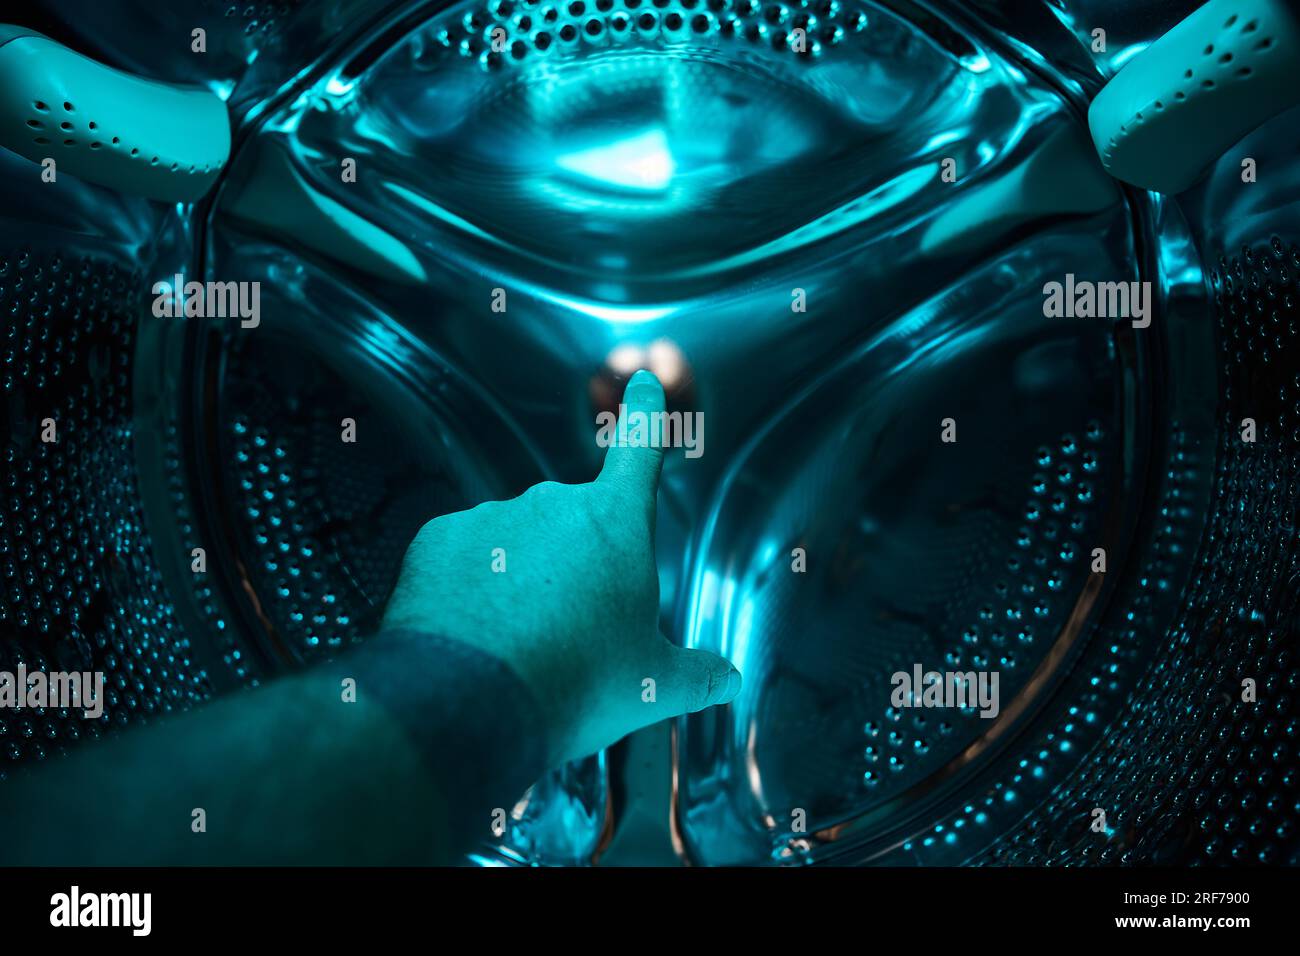 Eine Hand in der Waschmaschine zeigt einen Finger in ein blaues Licht, Zukunft, Science-Fiction, Konzept Stockfoto